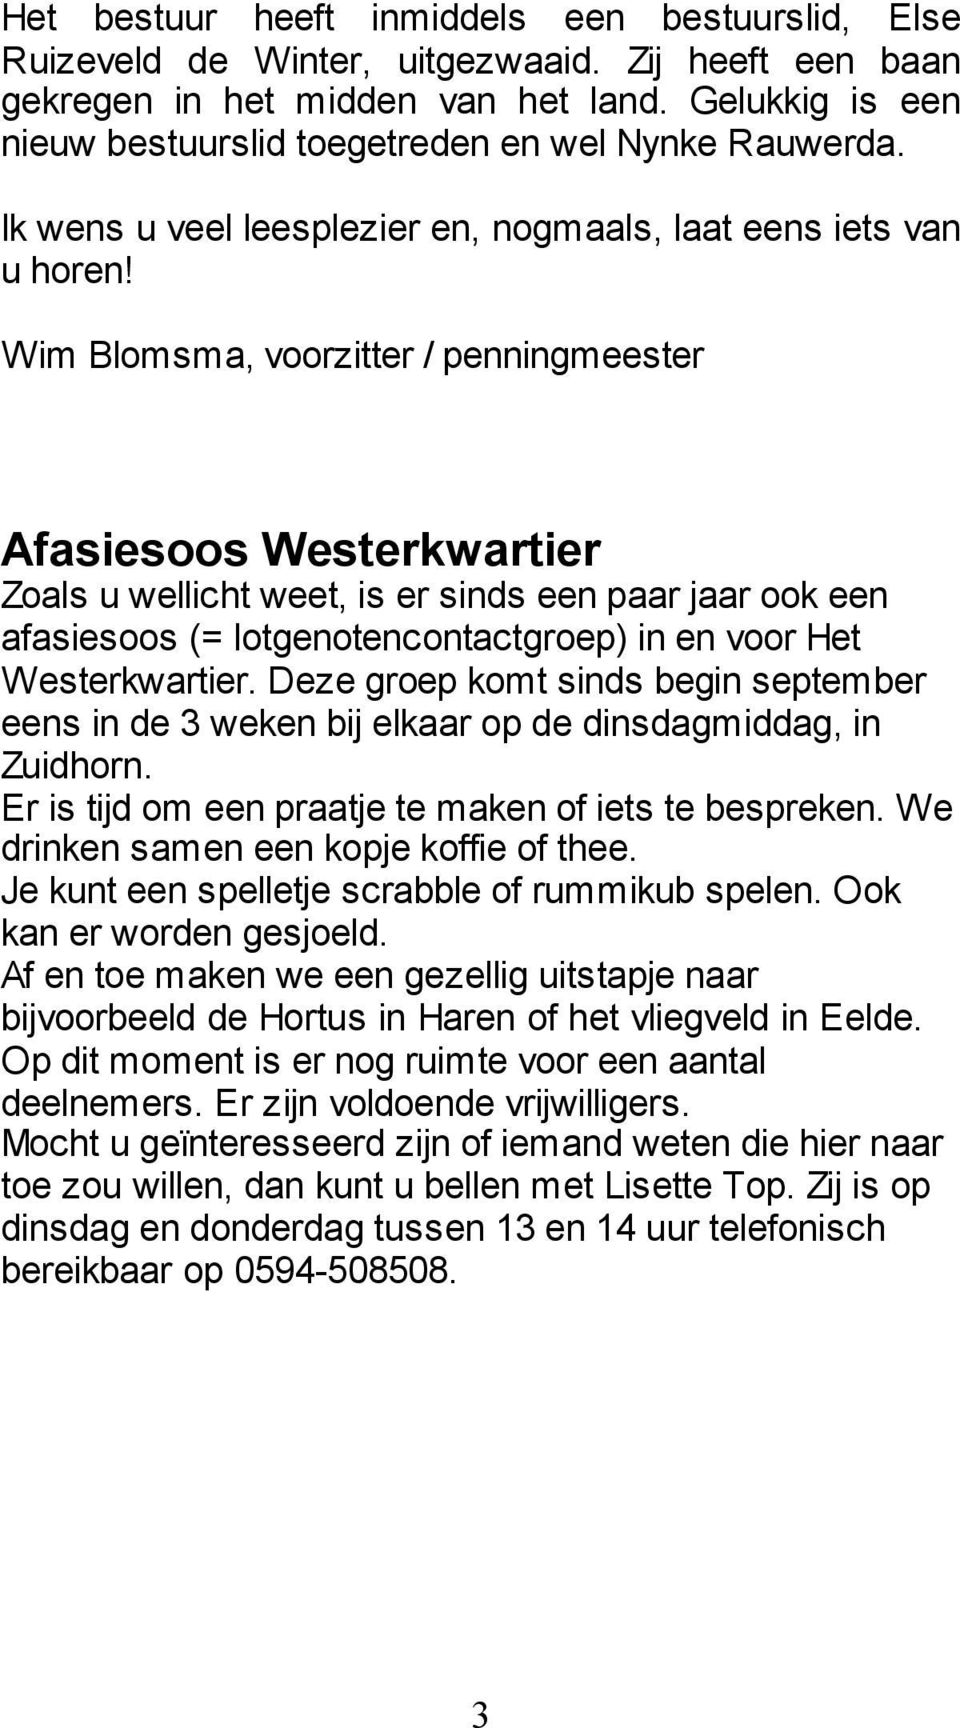 Wim Blomsma, voorzitter / penningmeester Afasiesoos Westerkwartier Zoals u wellicht weet, is er sinds een paar jaar ook een afasiesoos (= lotgenotencontactgroep) in en voor Het Westerkwartier.